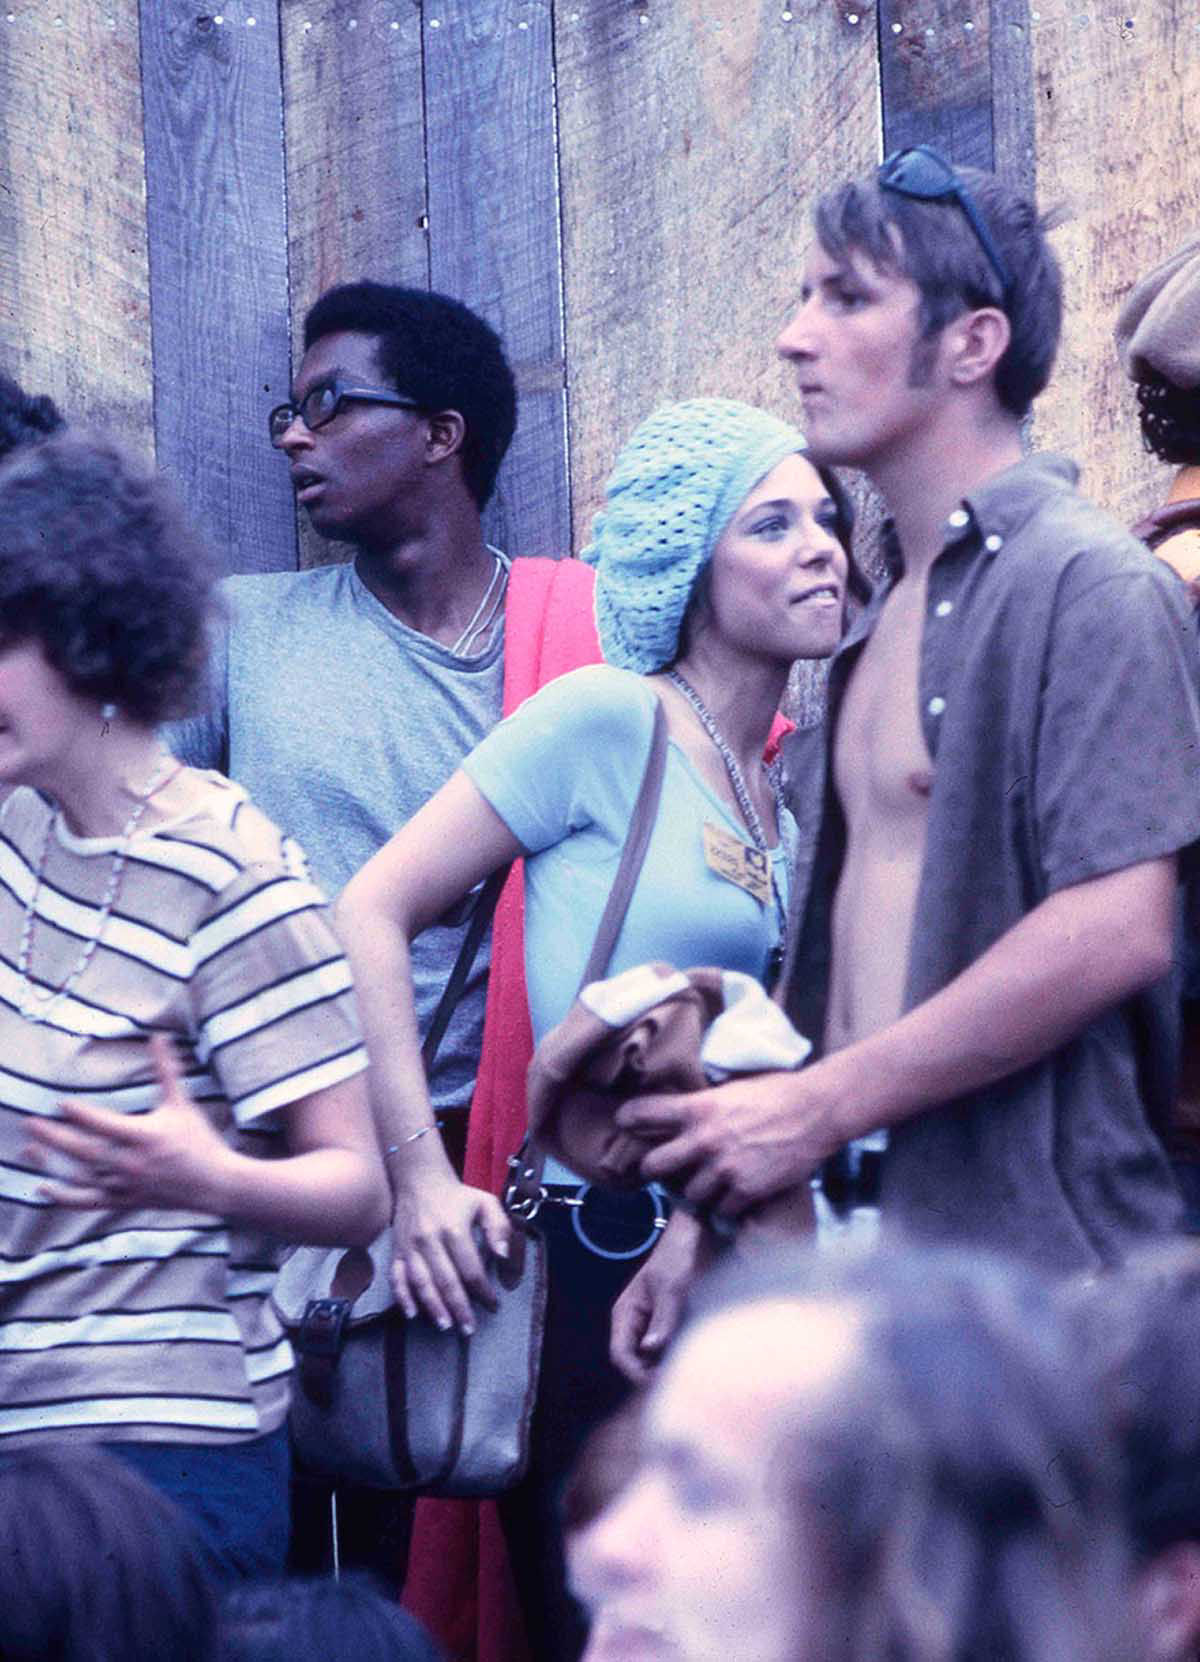 Fotos impressionantes retratam a moda rebelde de Woodstock em 1969 37